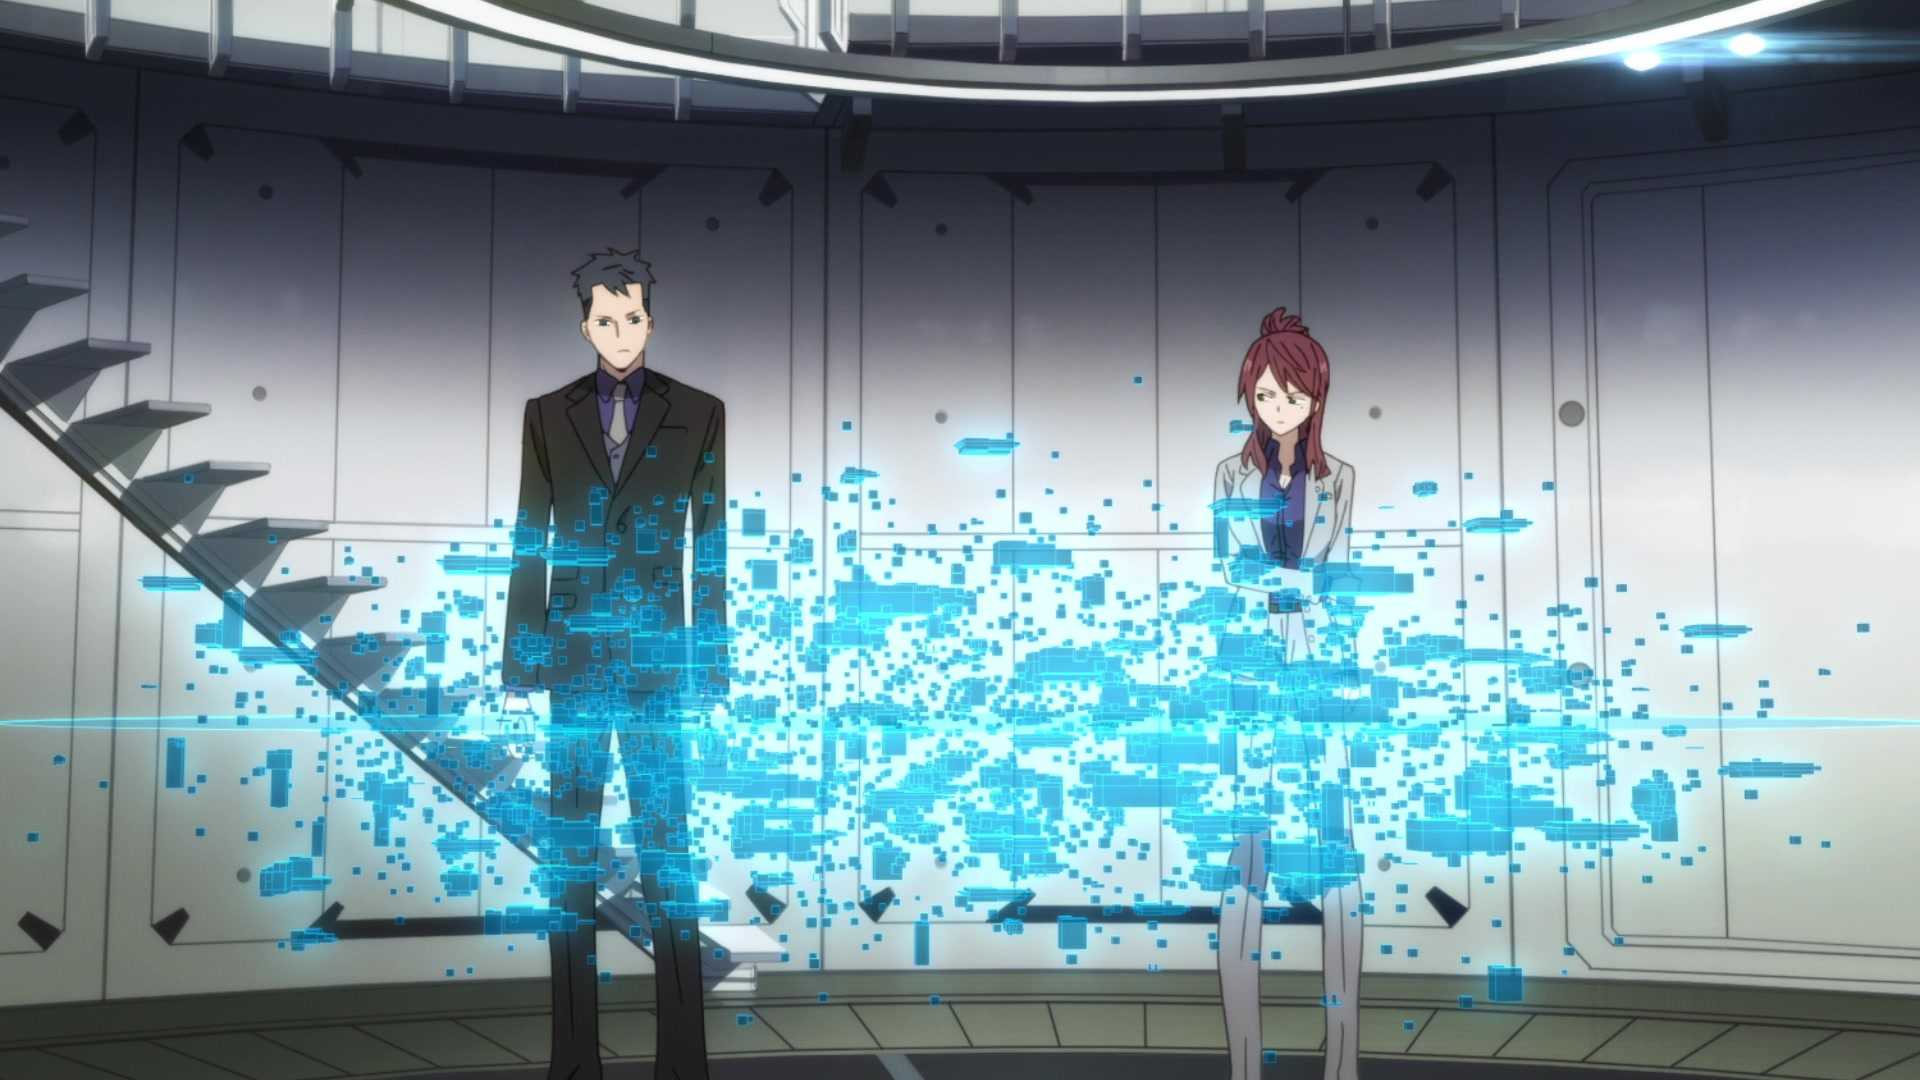 Смотреть онлайн все серии 2 сезона аниме ID: Вторжение, содержание, сюжет описание новых серий